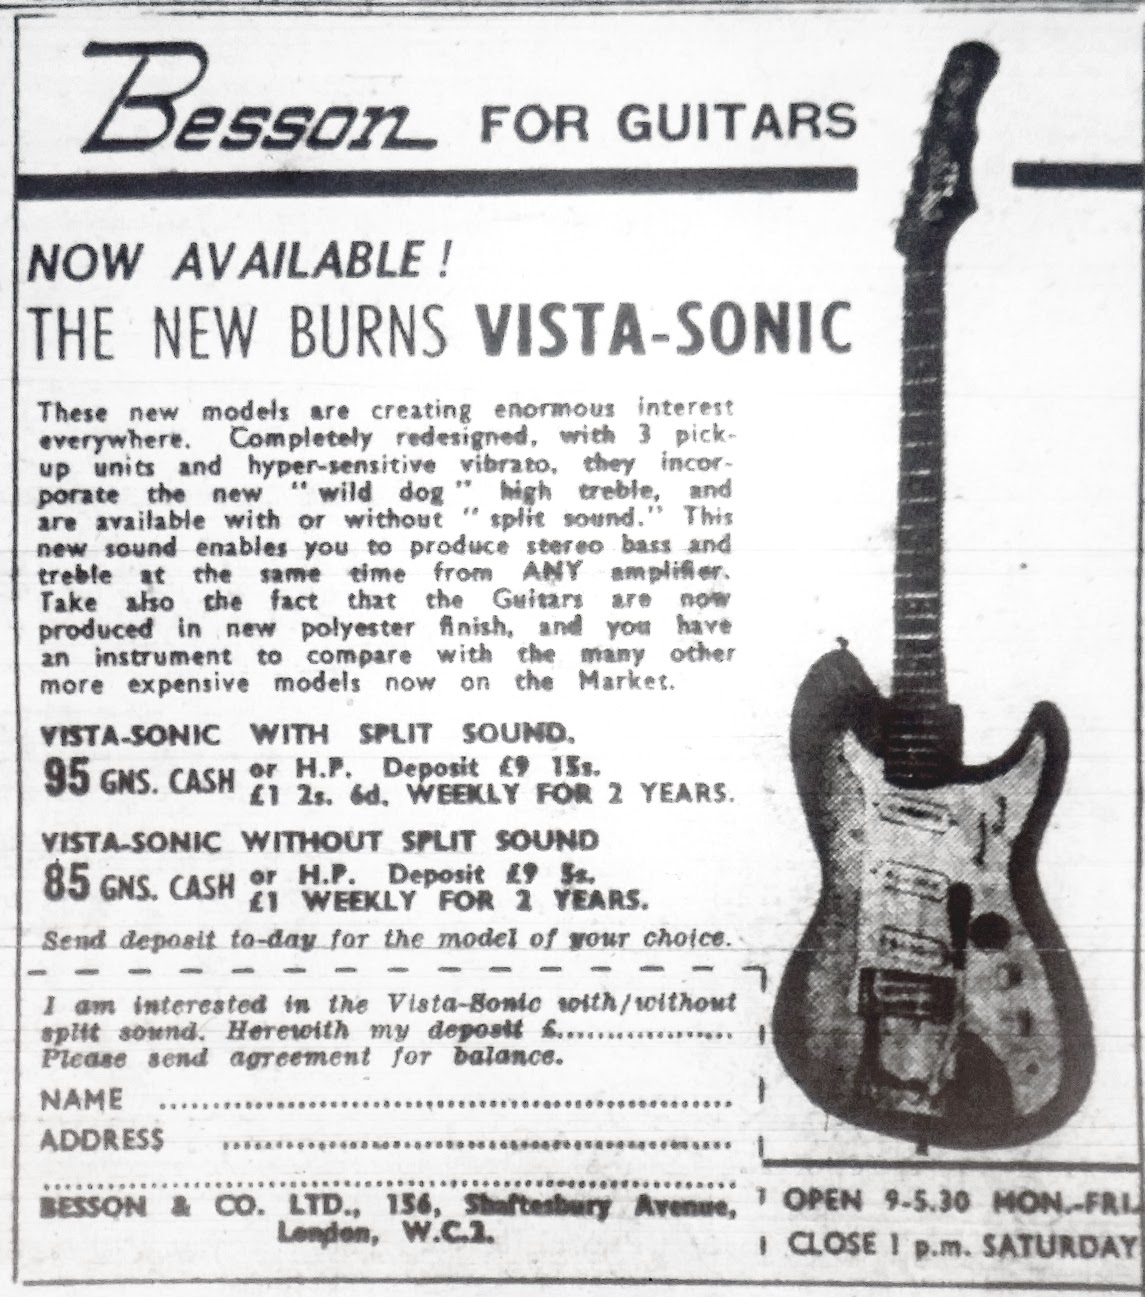 Besson Burns Vista-Sonic advert